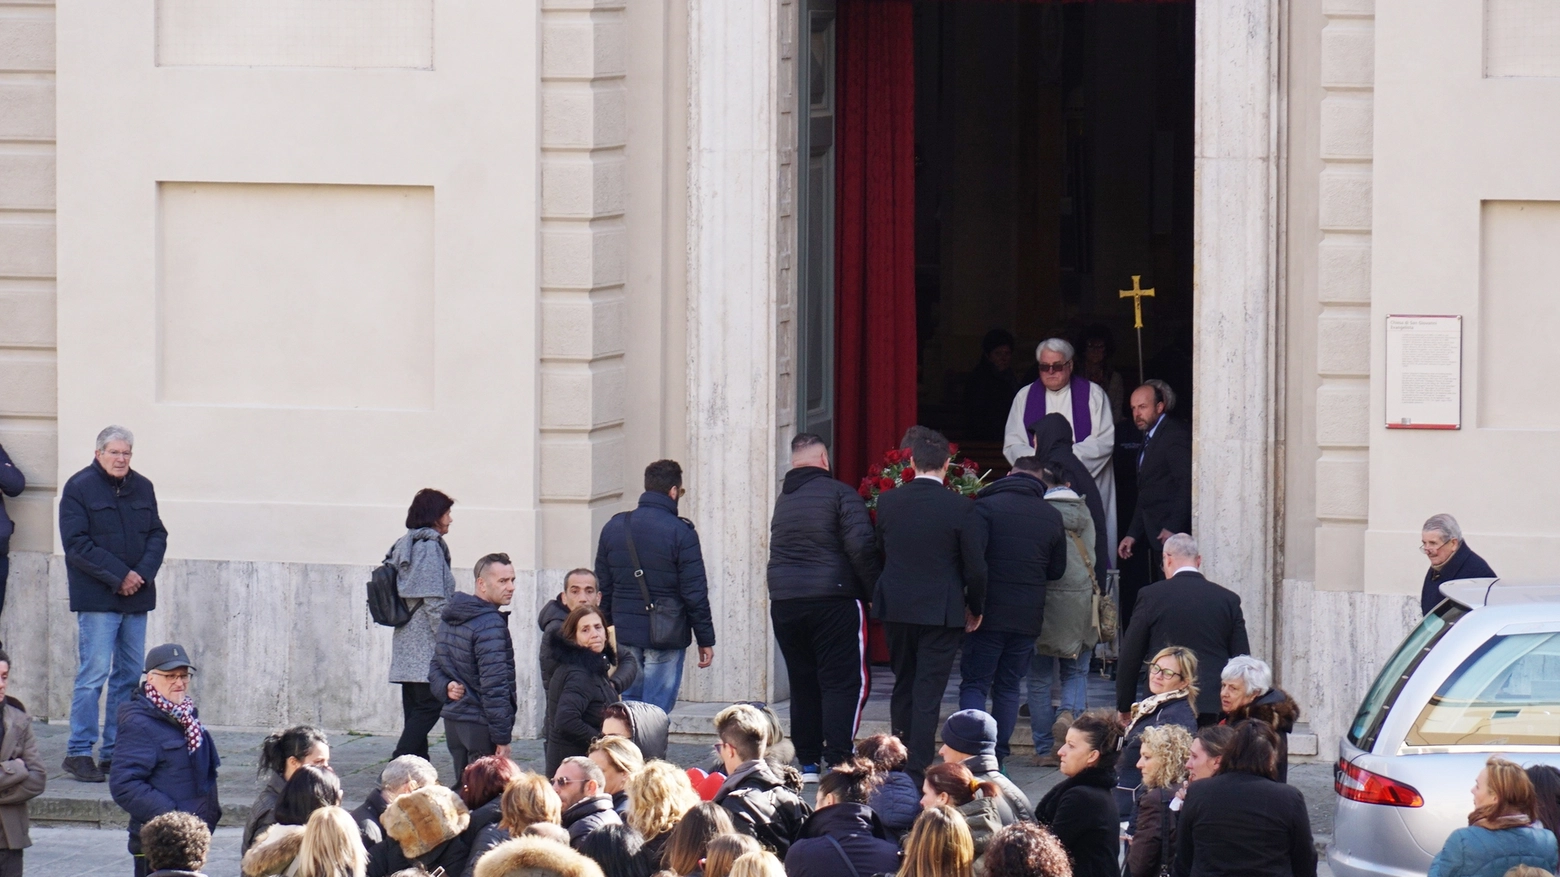 L'arrivo del feretro in chiesa (foto Sarah Esposito/Germogli)